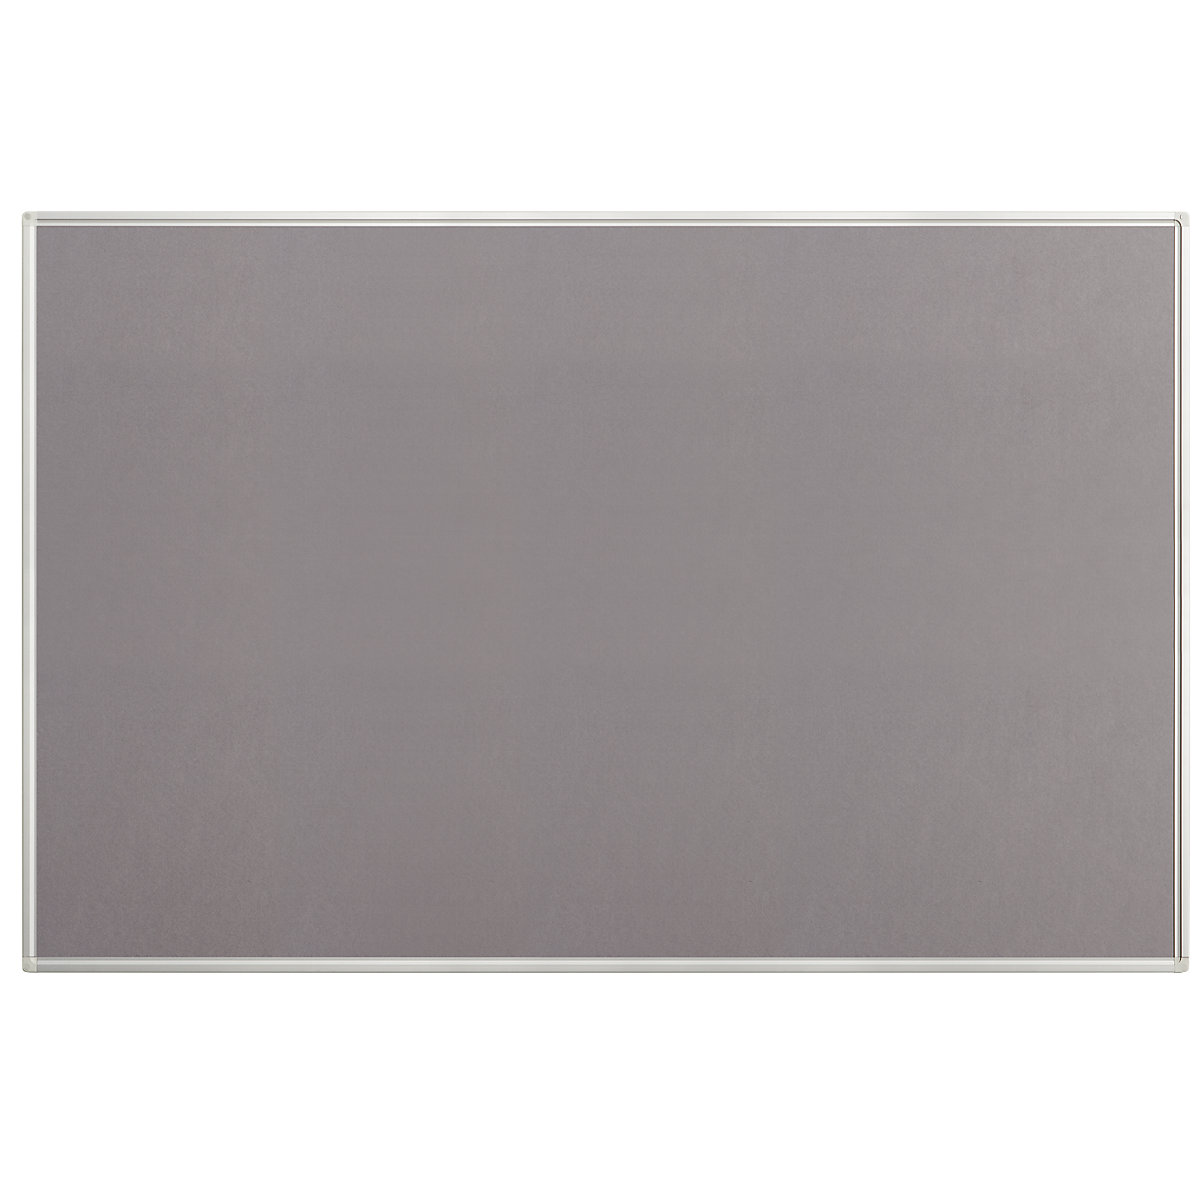 Tableau pour épingles, feutre, gris, l x h 1500 x 1000 mm-3